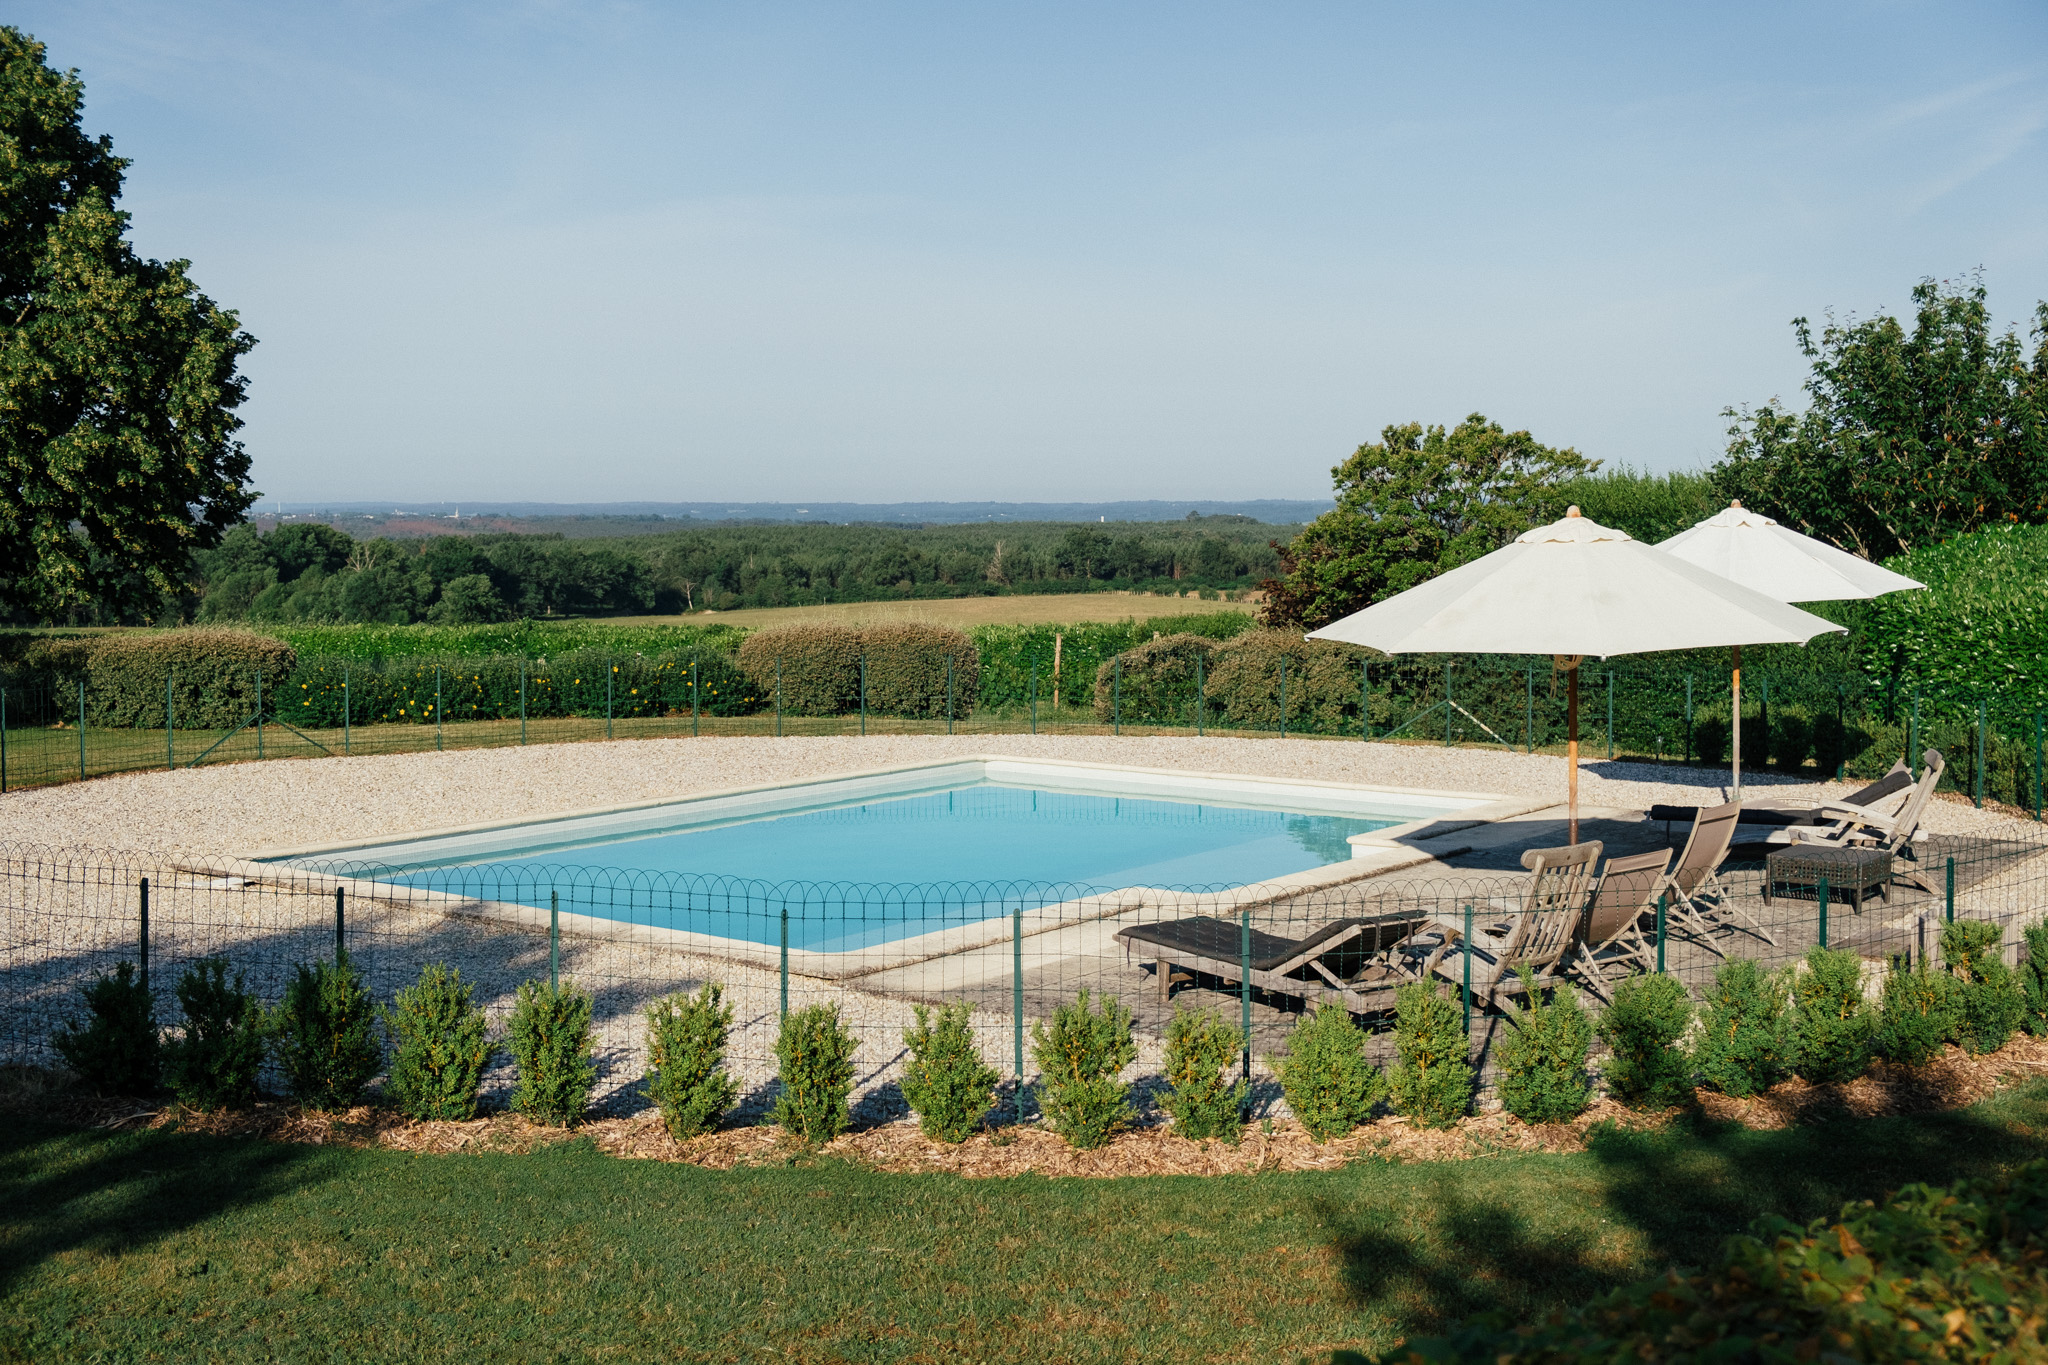 Location de vacances d'un chateau avec piscine proche de Bordeaux